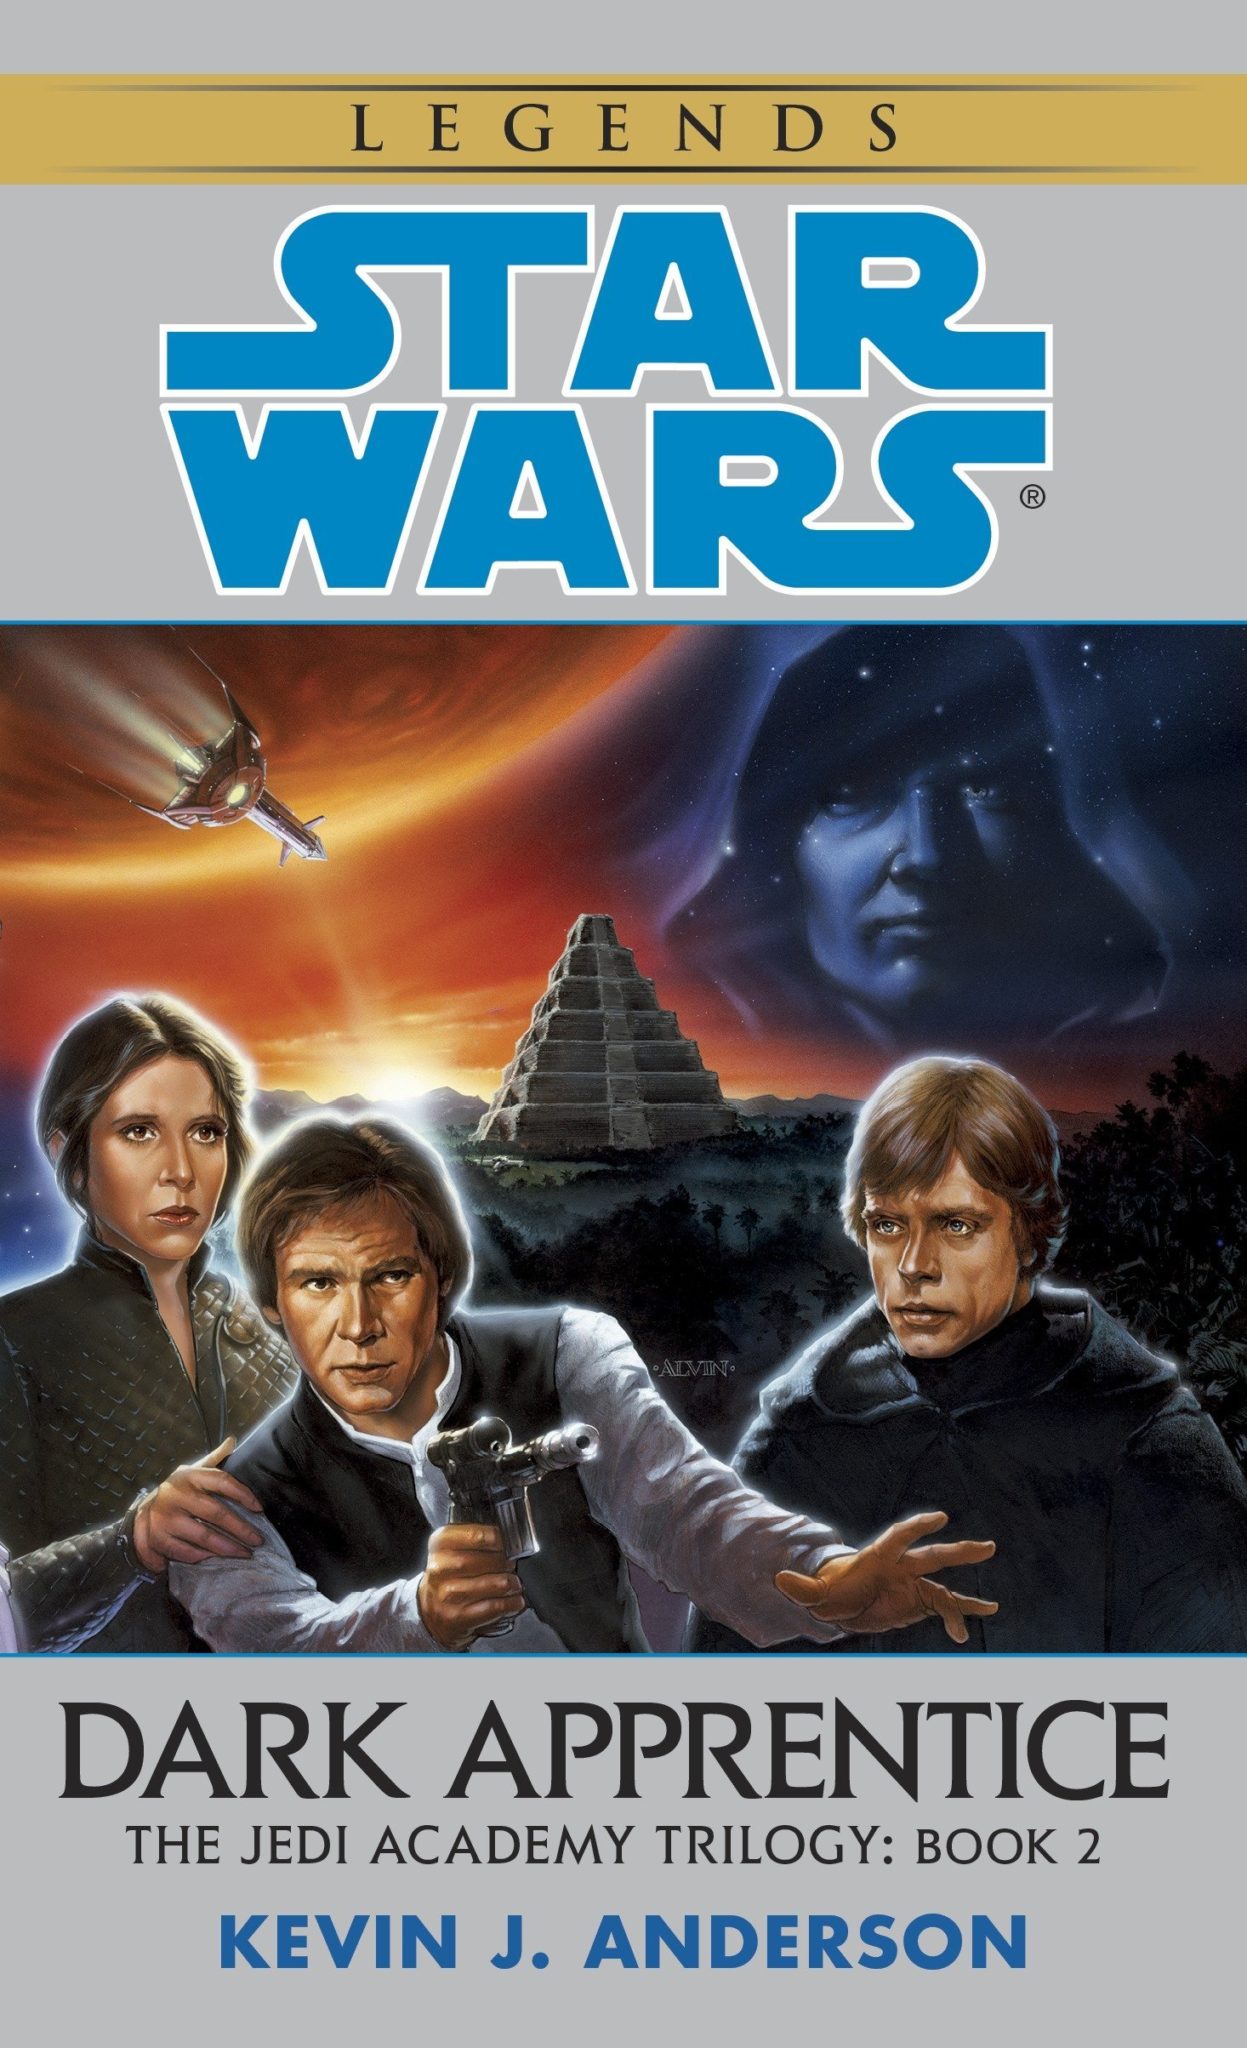 Livros de Star Wars 8